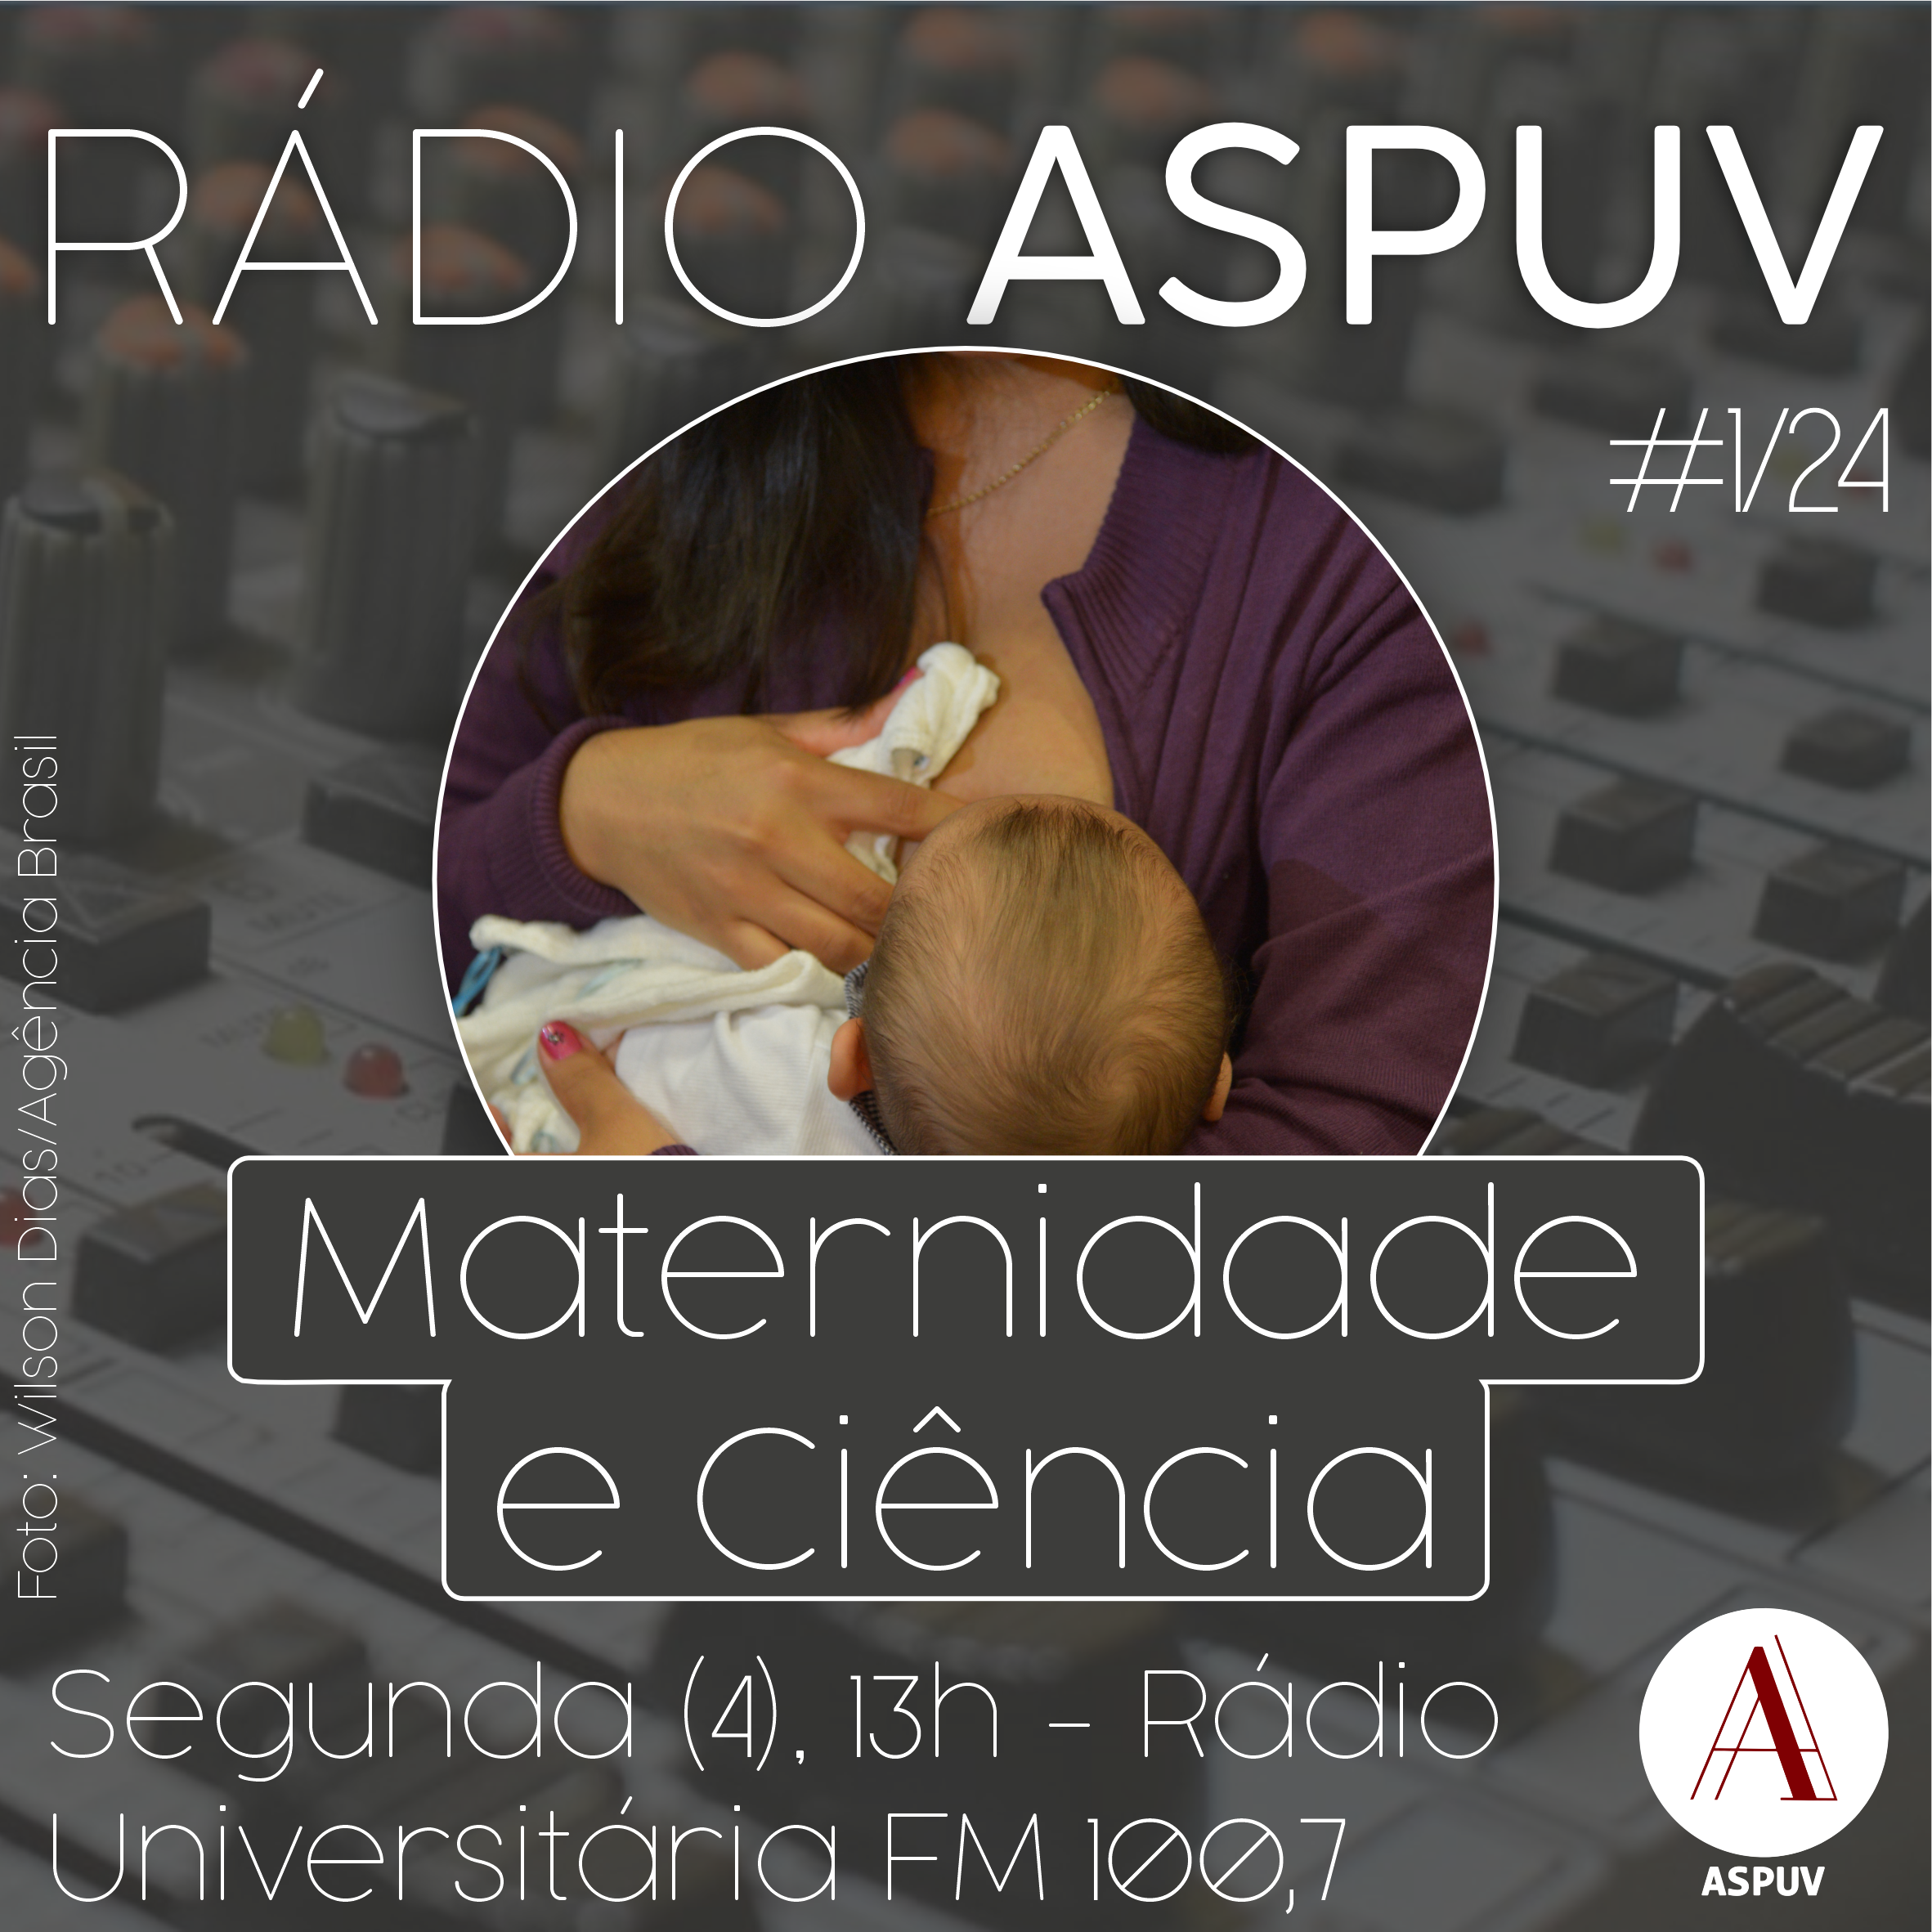 Rádio ASPUV #01/24 | Maternidade e ciência